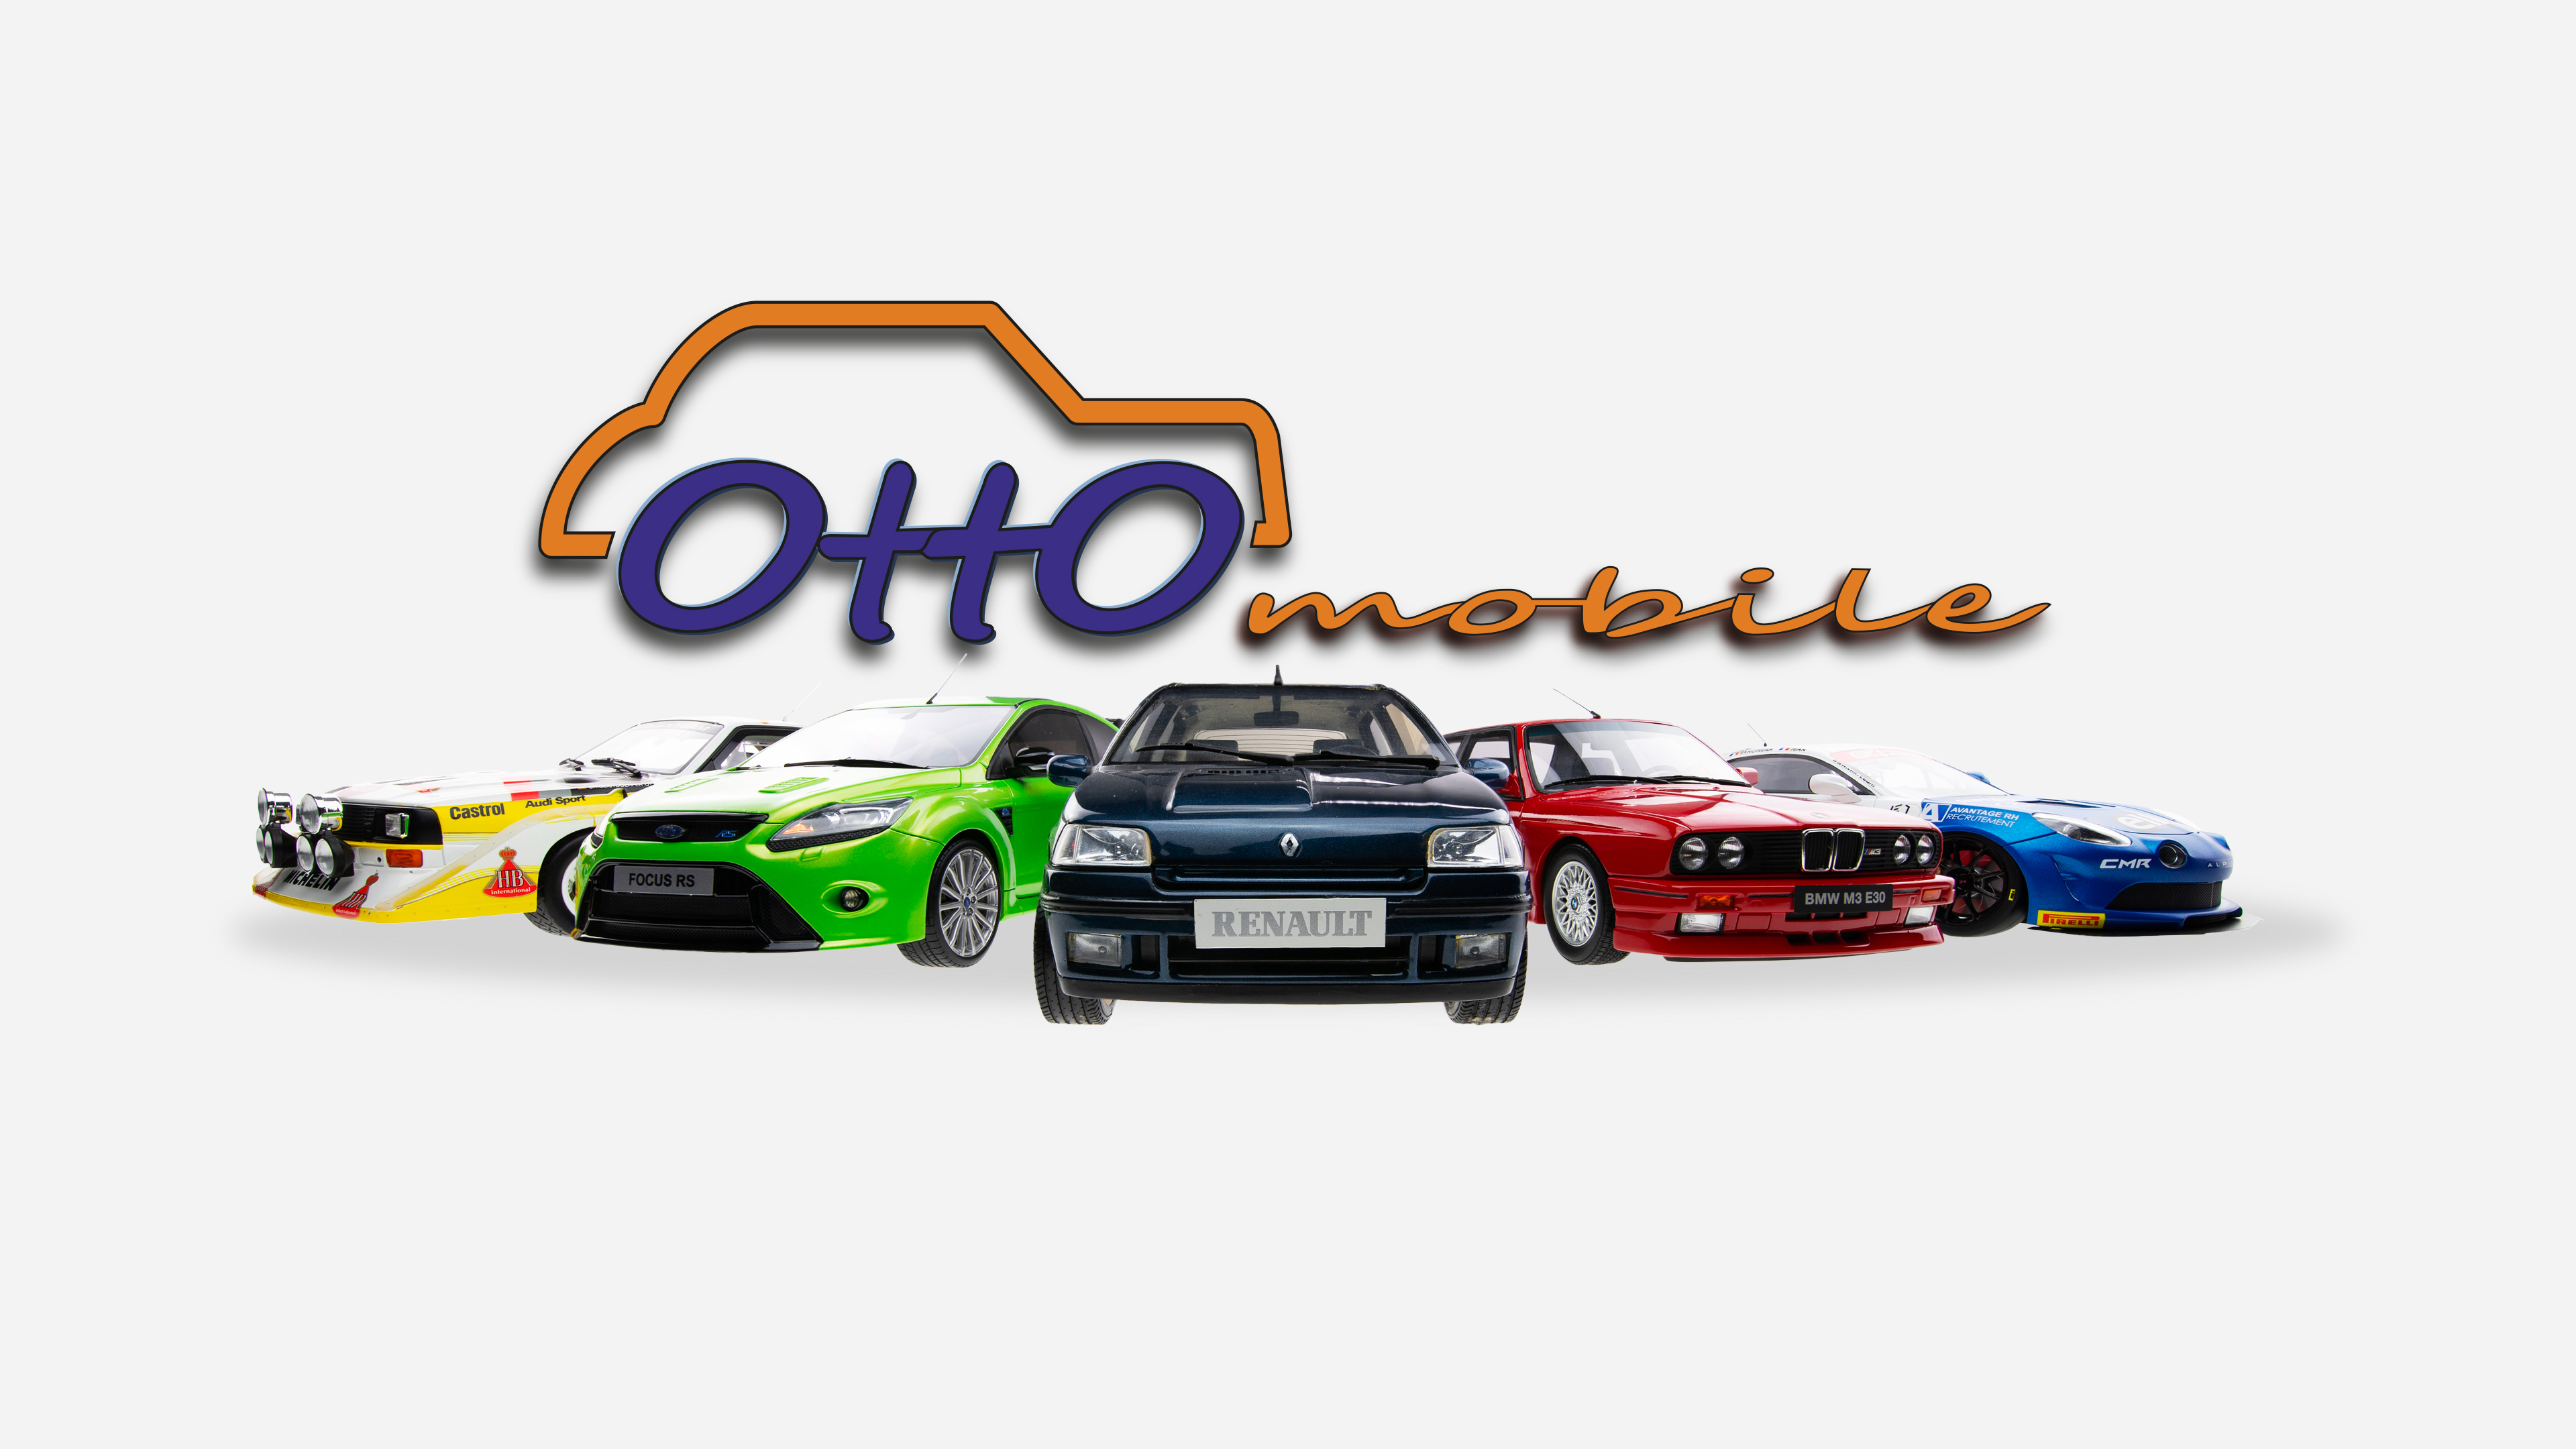 Mes dernières voitures miniatures OttOmobile 1/18 #1 : Subaru, Peugeot,  Honda ! 